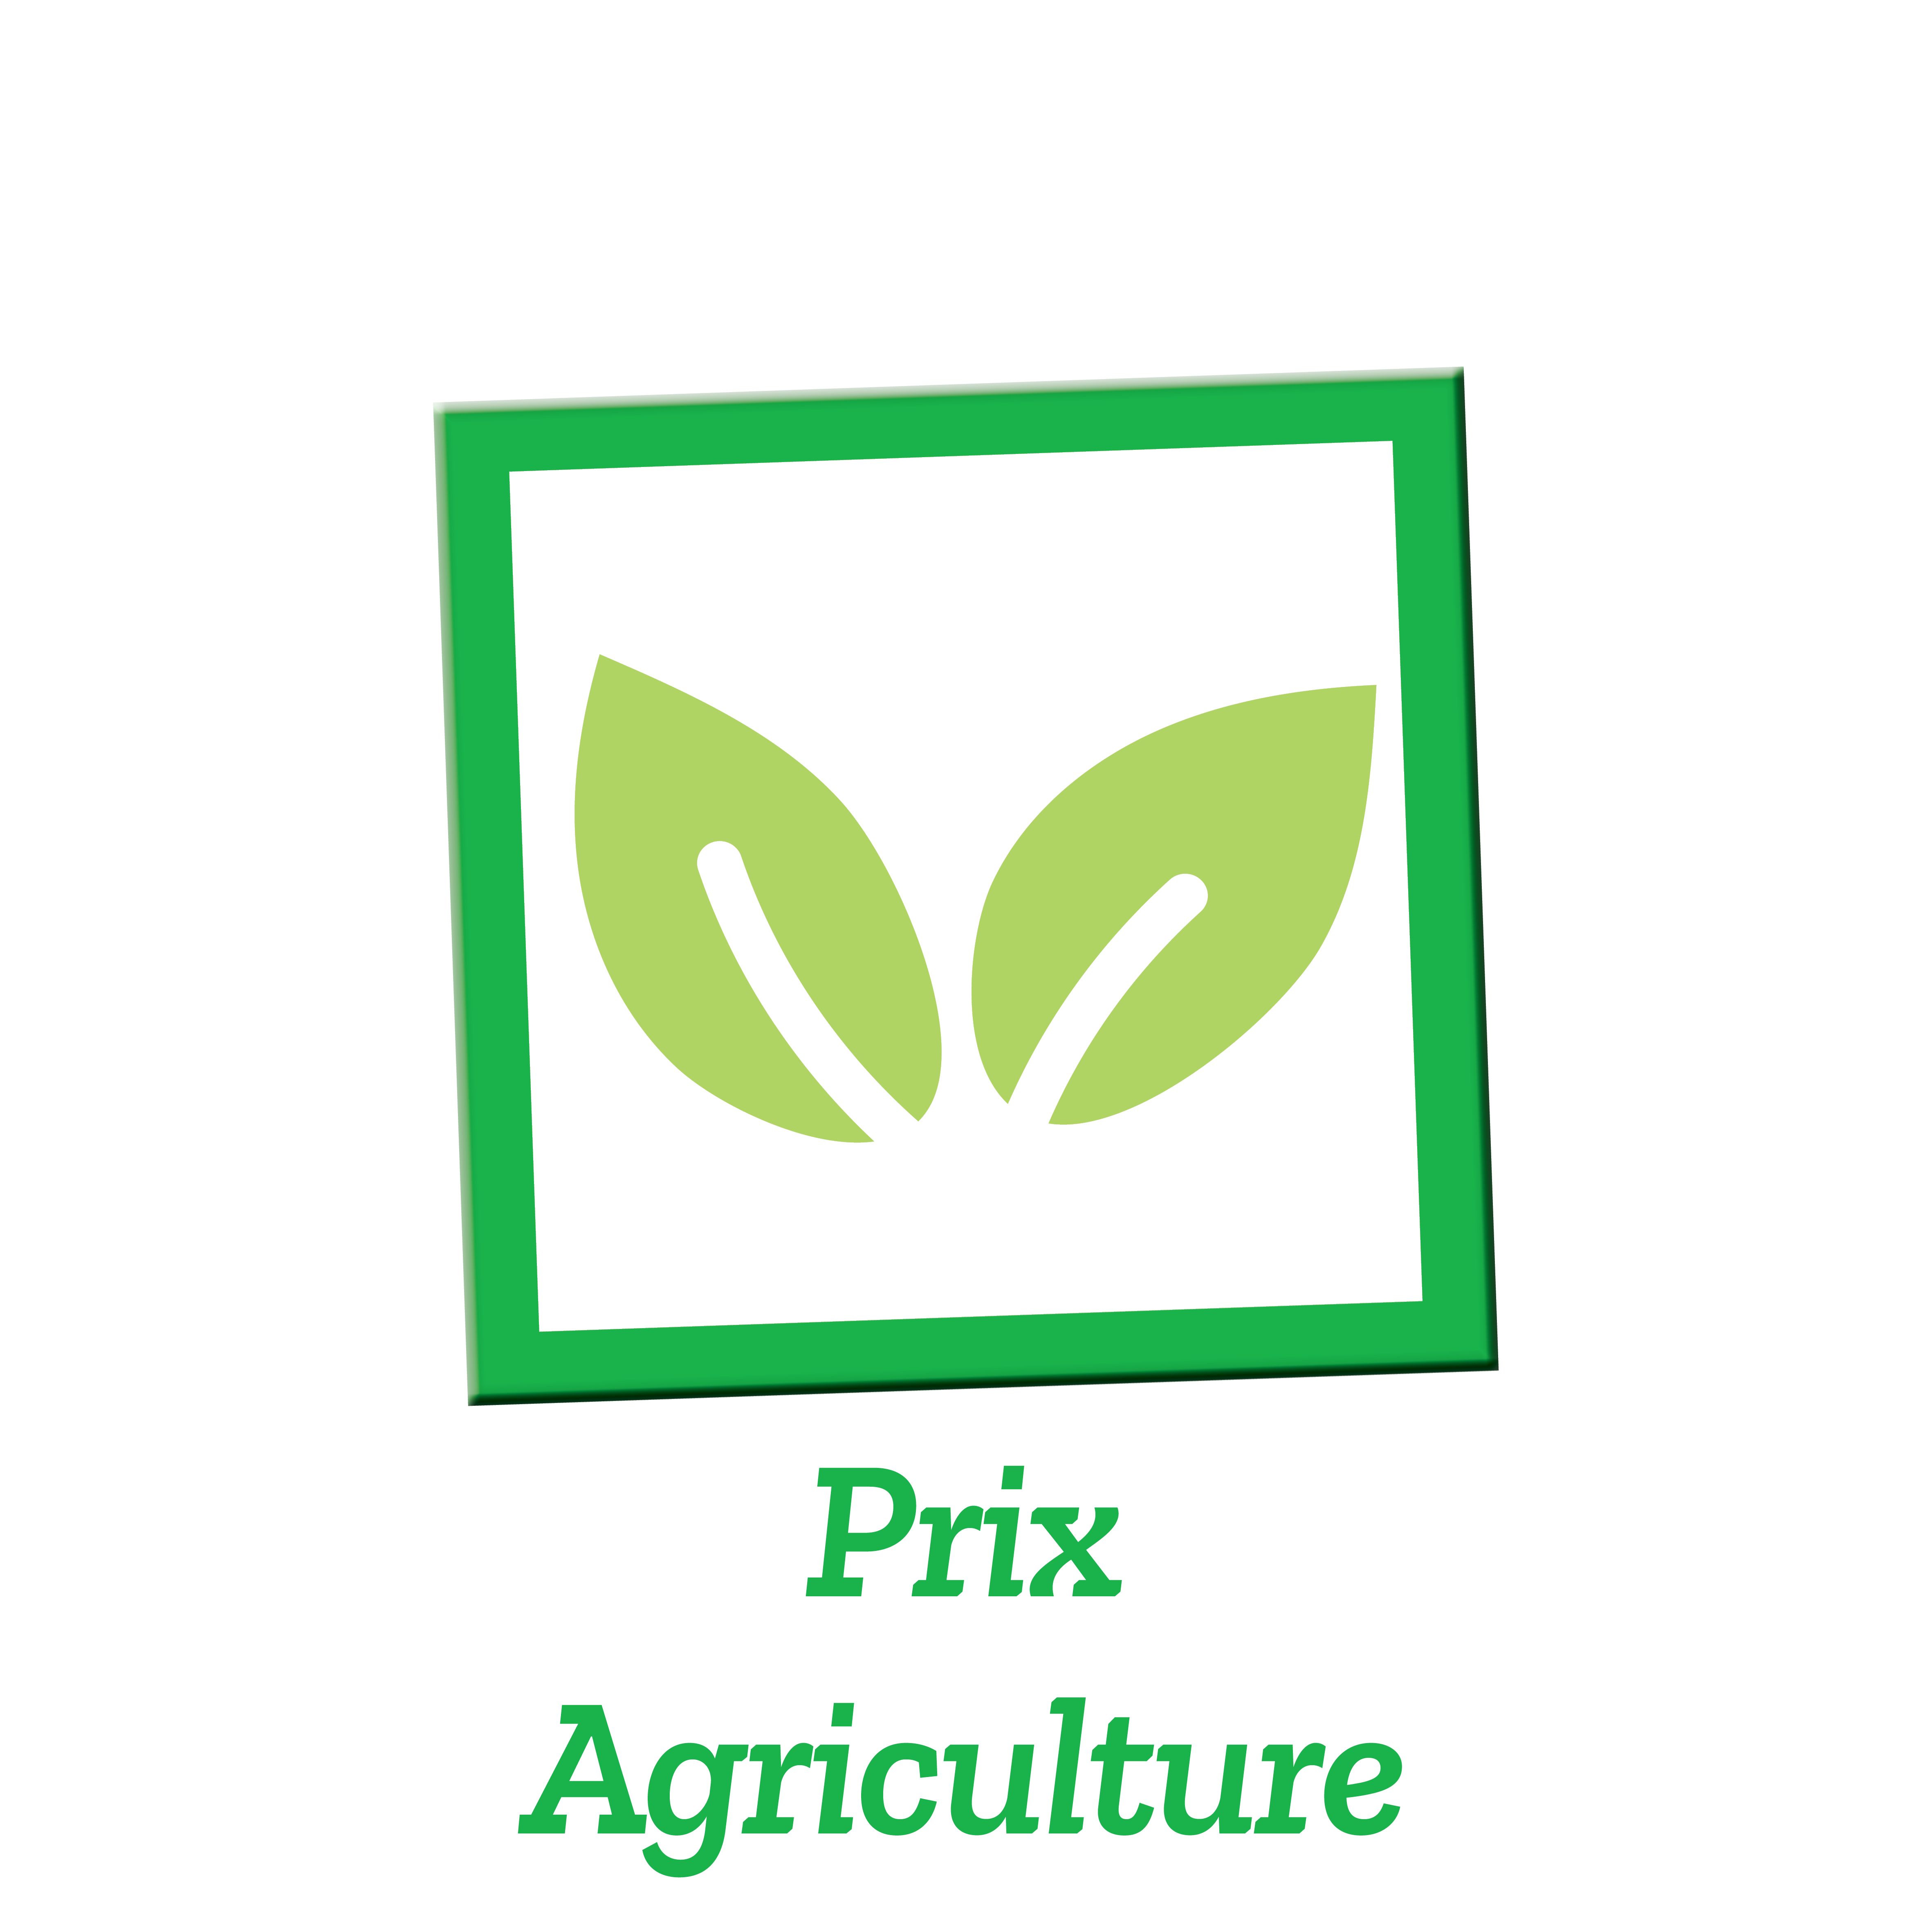 Picto_Prix_Agri_iof_2020.png